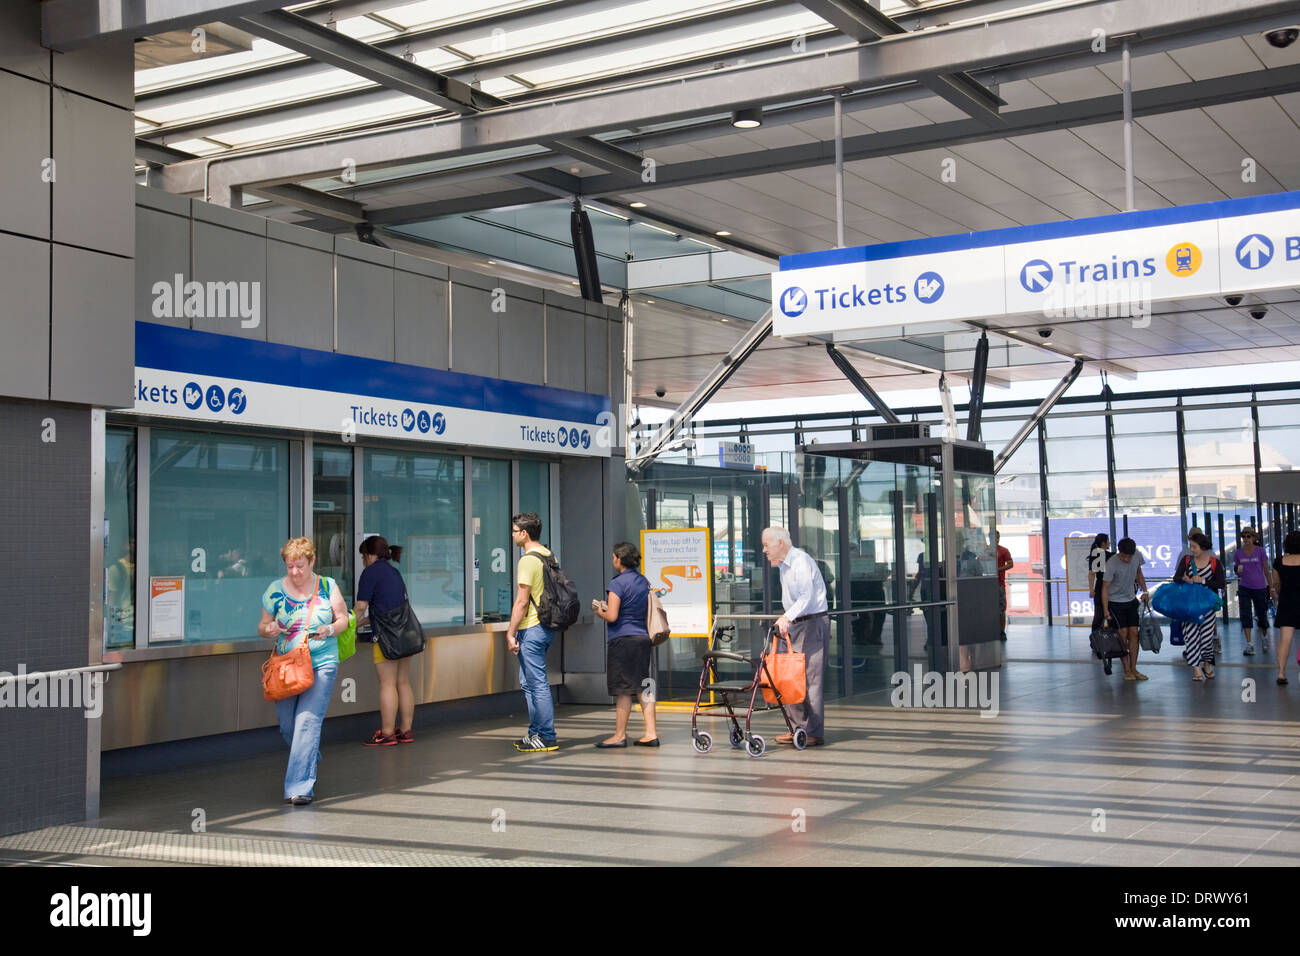 Persone che acquistano biglietti ferroviari a Epping stazione ferroviaria di Sydney, Nuovo Galles del Sud i mezzi di trasporto pubblico del sistema ferroviario Foto Stock